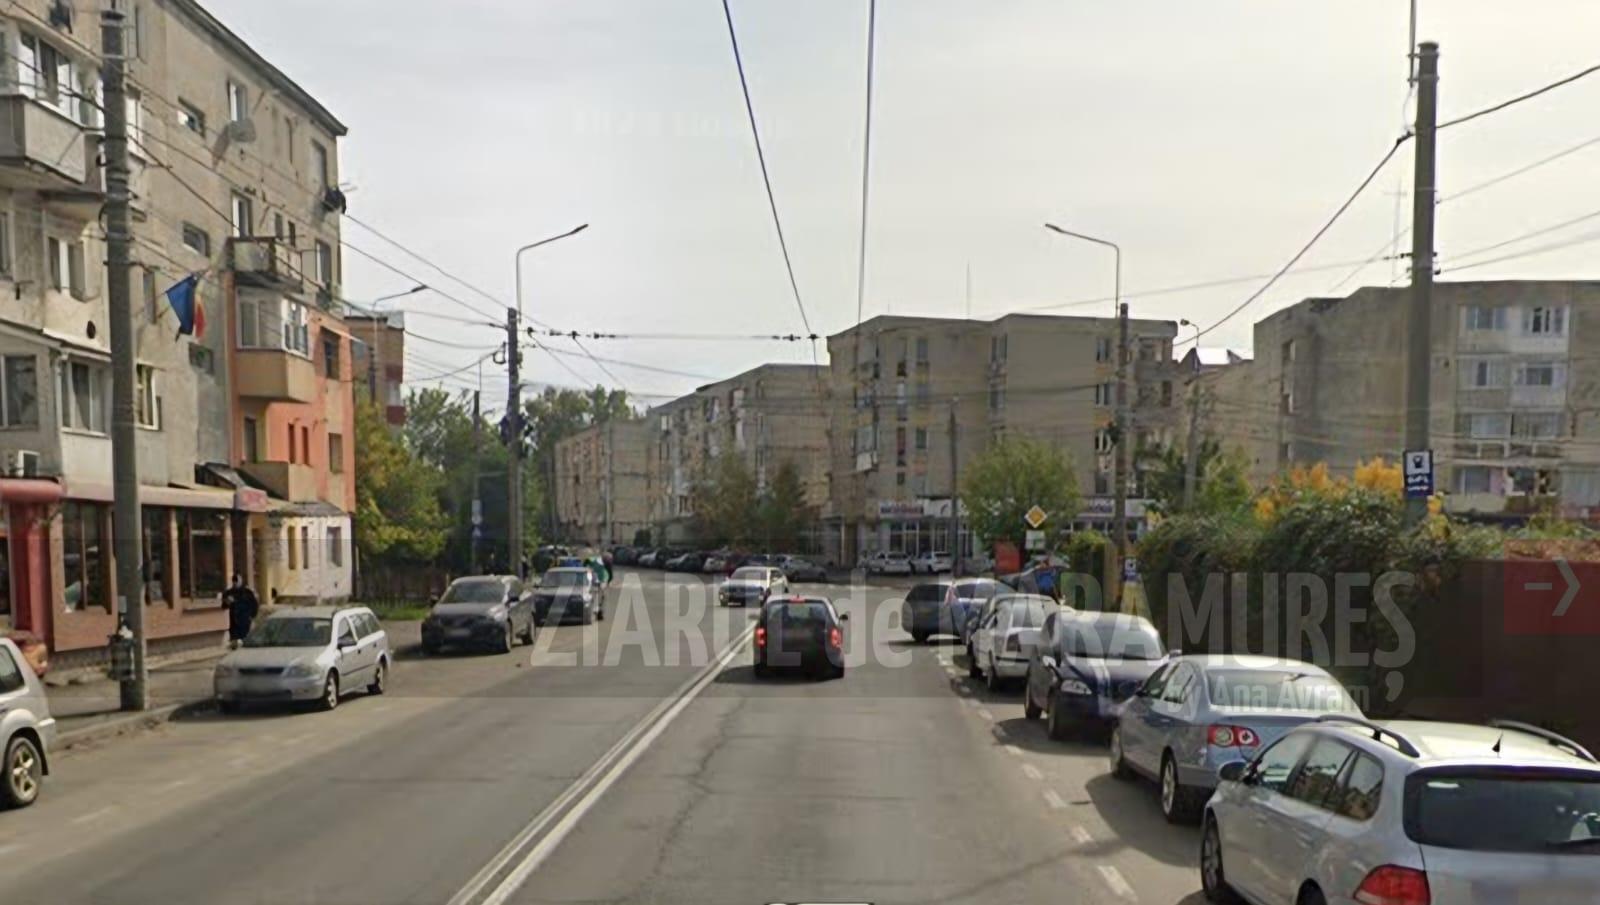 Restricții de circulație auto în zona străzilor Motorului și Mărgeanului din Baia Mare